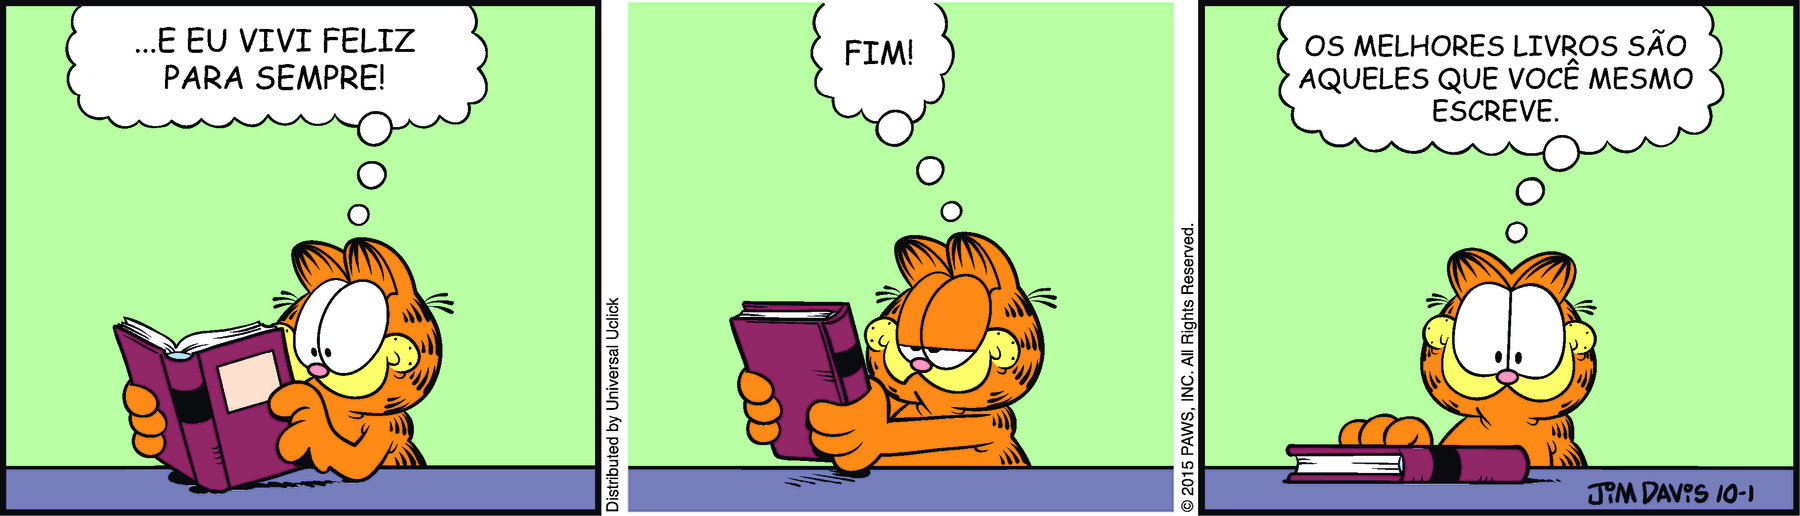 Tirinha. Em três cenas: Cena 1. Garfield, um gato robusto alaranjado com listras pretas. Ele está com os olhos bem abertos voltados para as páginas de um livro que está em suas mãos. Ele pensa: ...E EU VIVI FELIZ PARA SEMPRE! Cena 2. Fechando o livro, Garfield pensa: FIM! Cena 3. Garfield está olhando para frente. O livro está sobre a mesa. Ele pensa: OS MELHORES LIVROS SÃO AQUELES QUE VOCÊ MESMO ESCREVE.